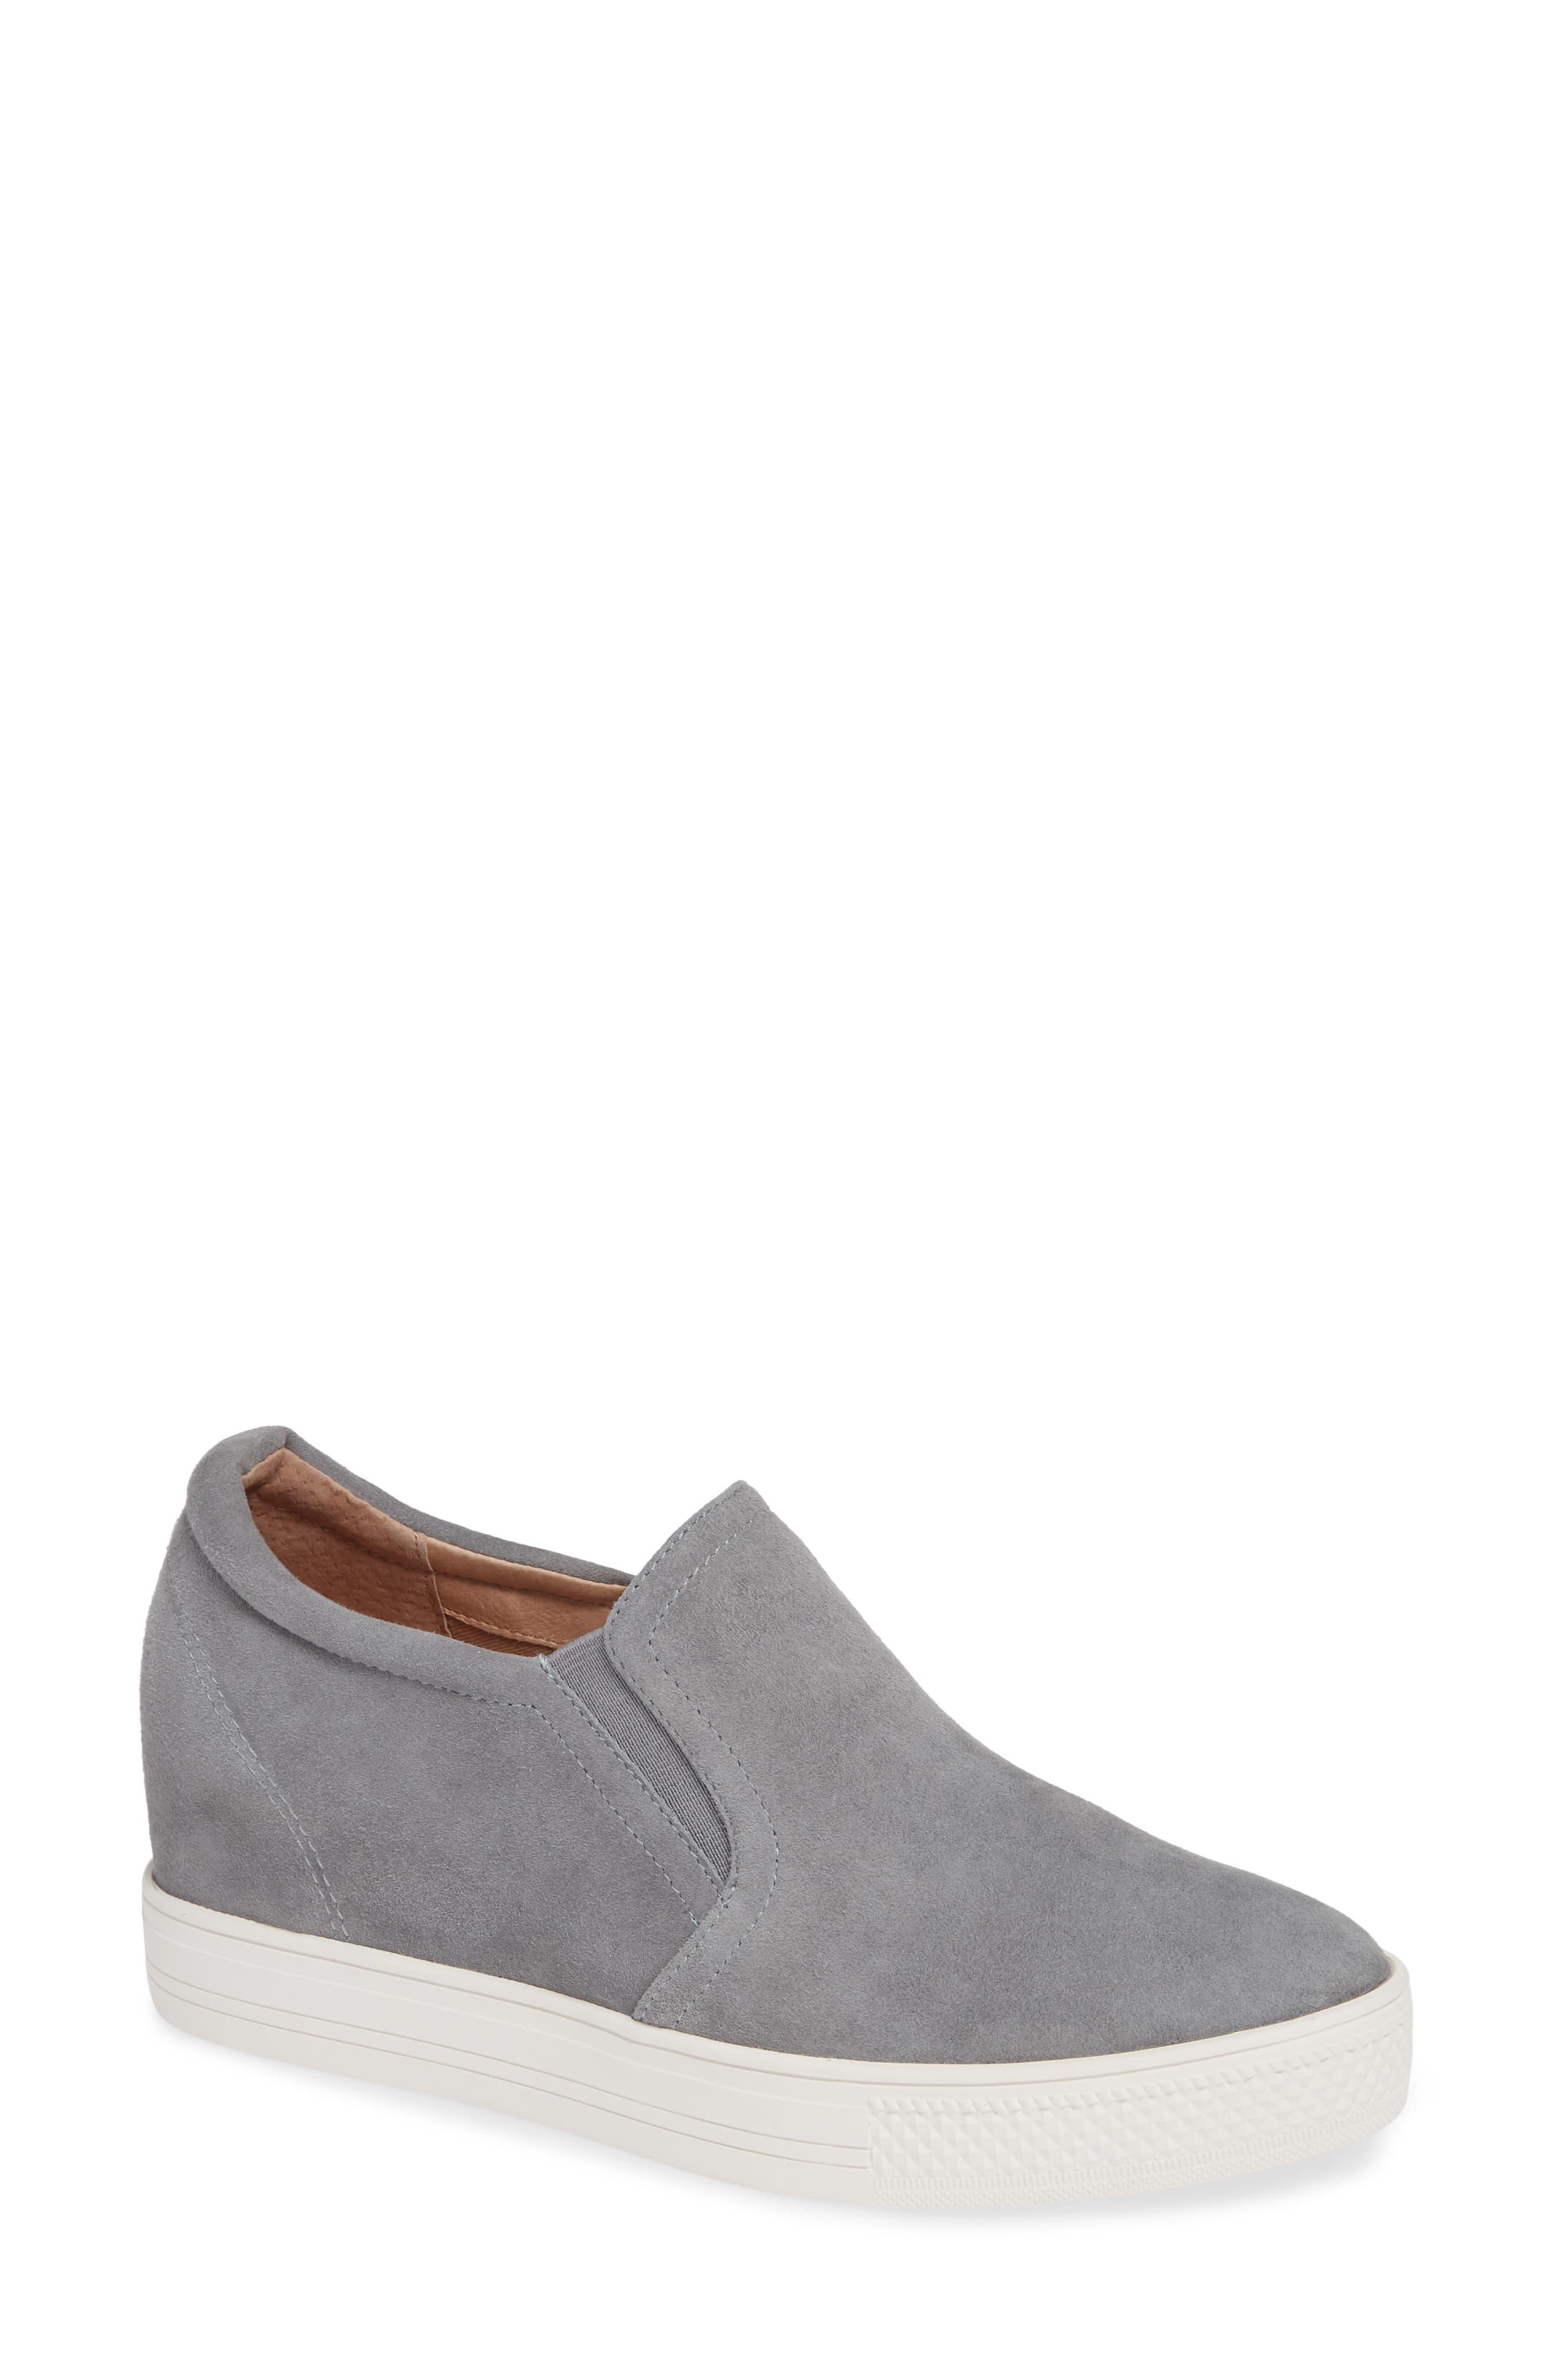 Caslon Caslon Austin Slip-on Sneaker in Grey Suede (Gray) - Lyst